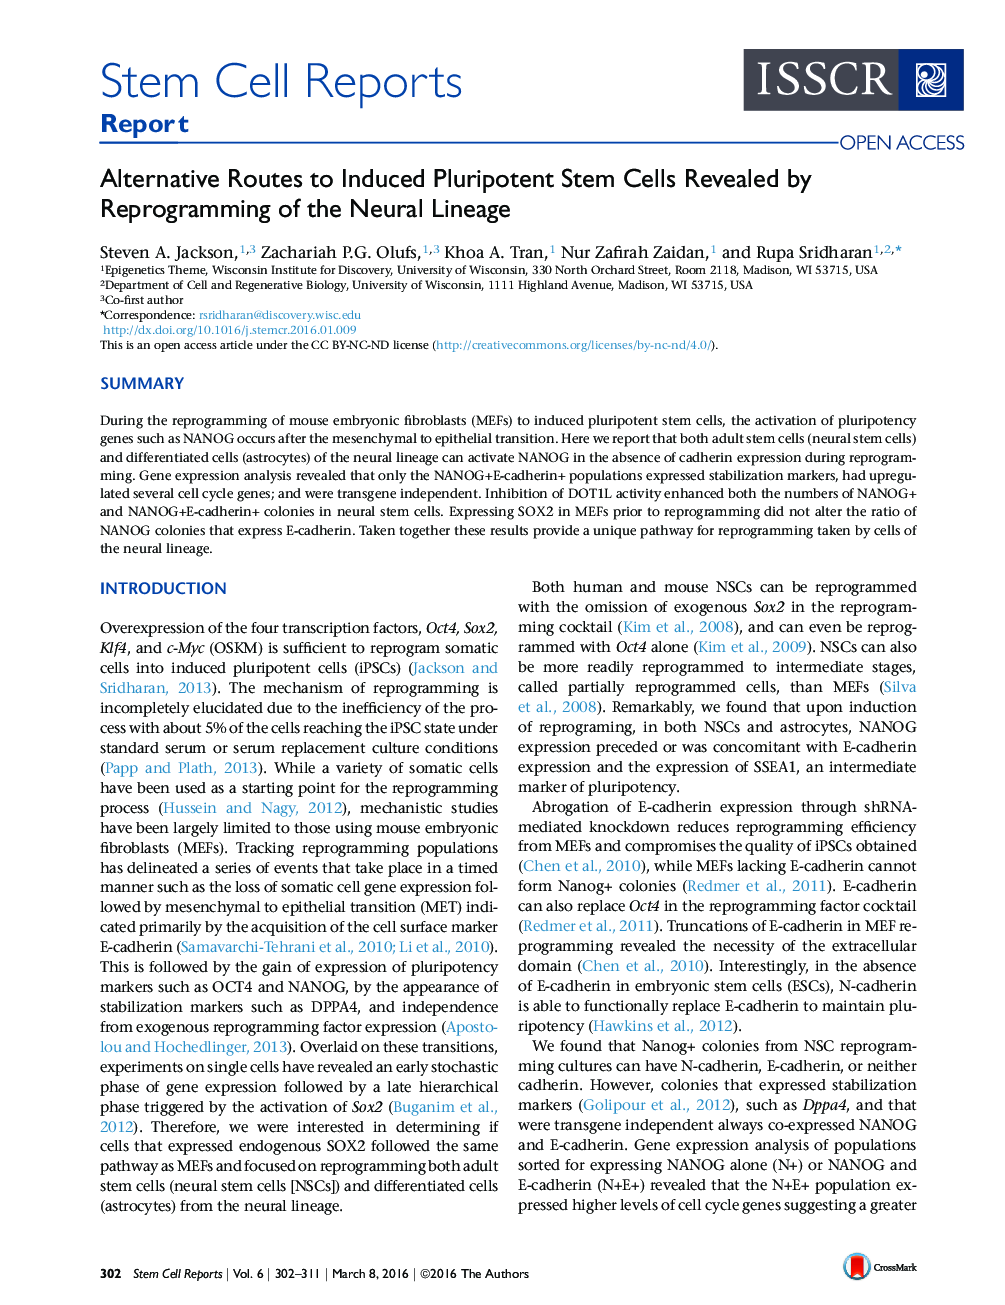 مسیرهای جایگزین برای سلول های بنیادی پلوروپتونی که توسط برنامه ریزی خطی عصبی مشخص شده اند 